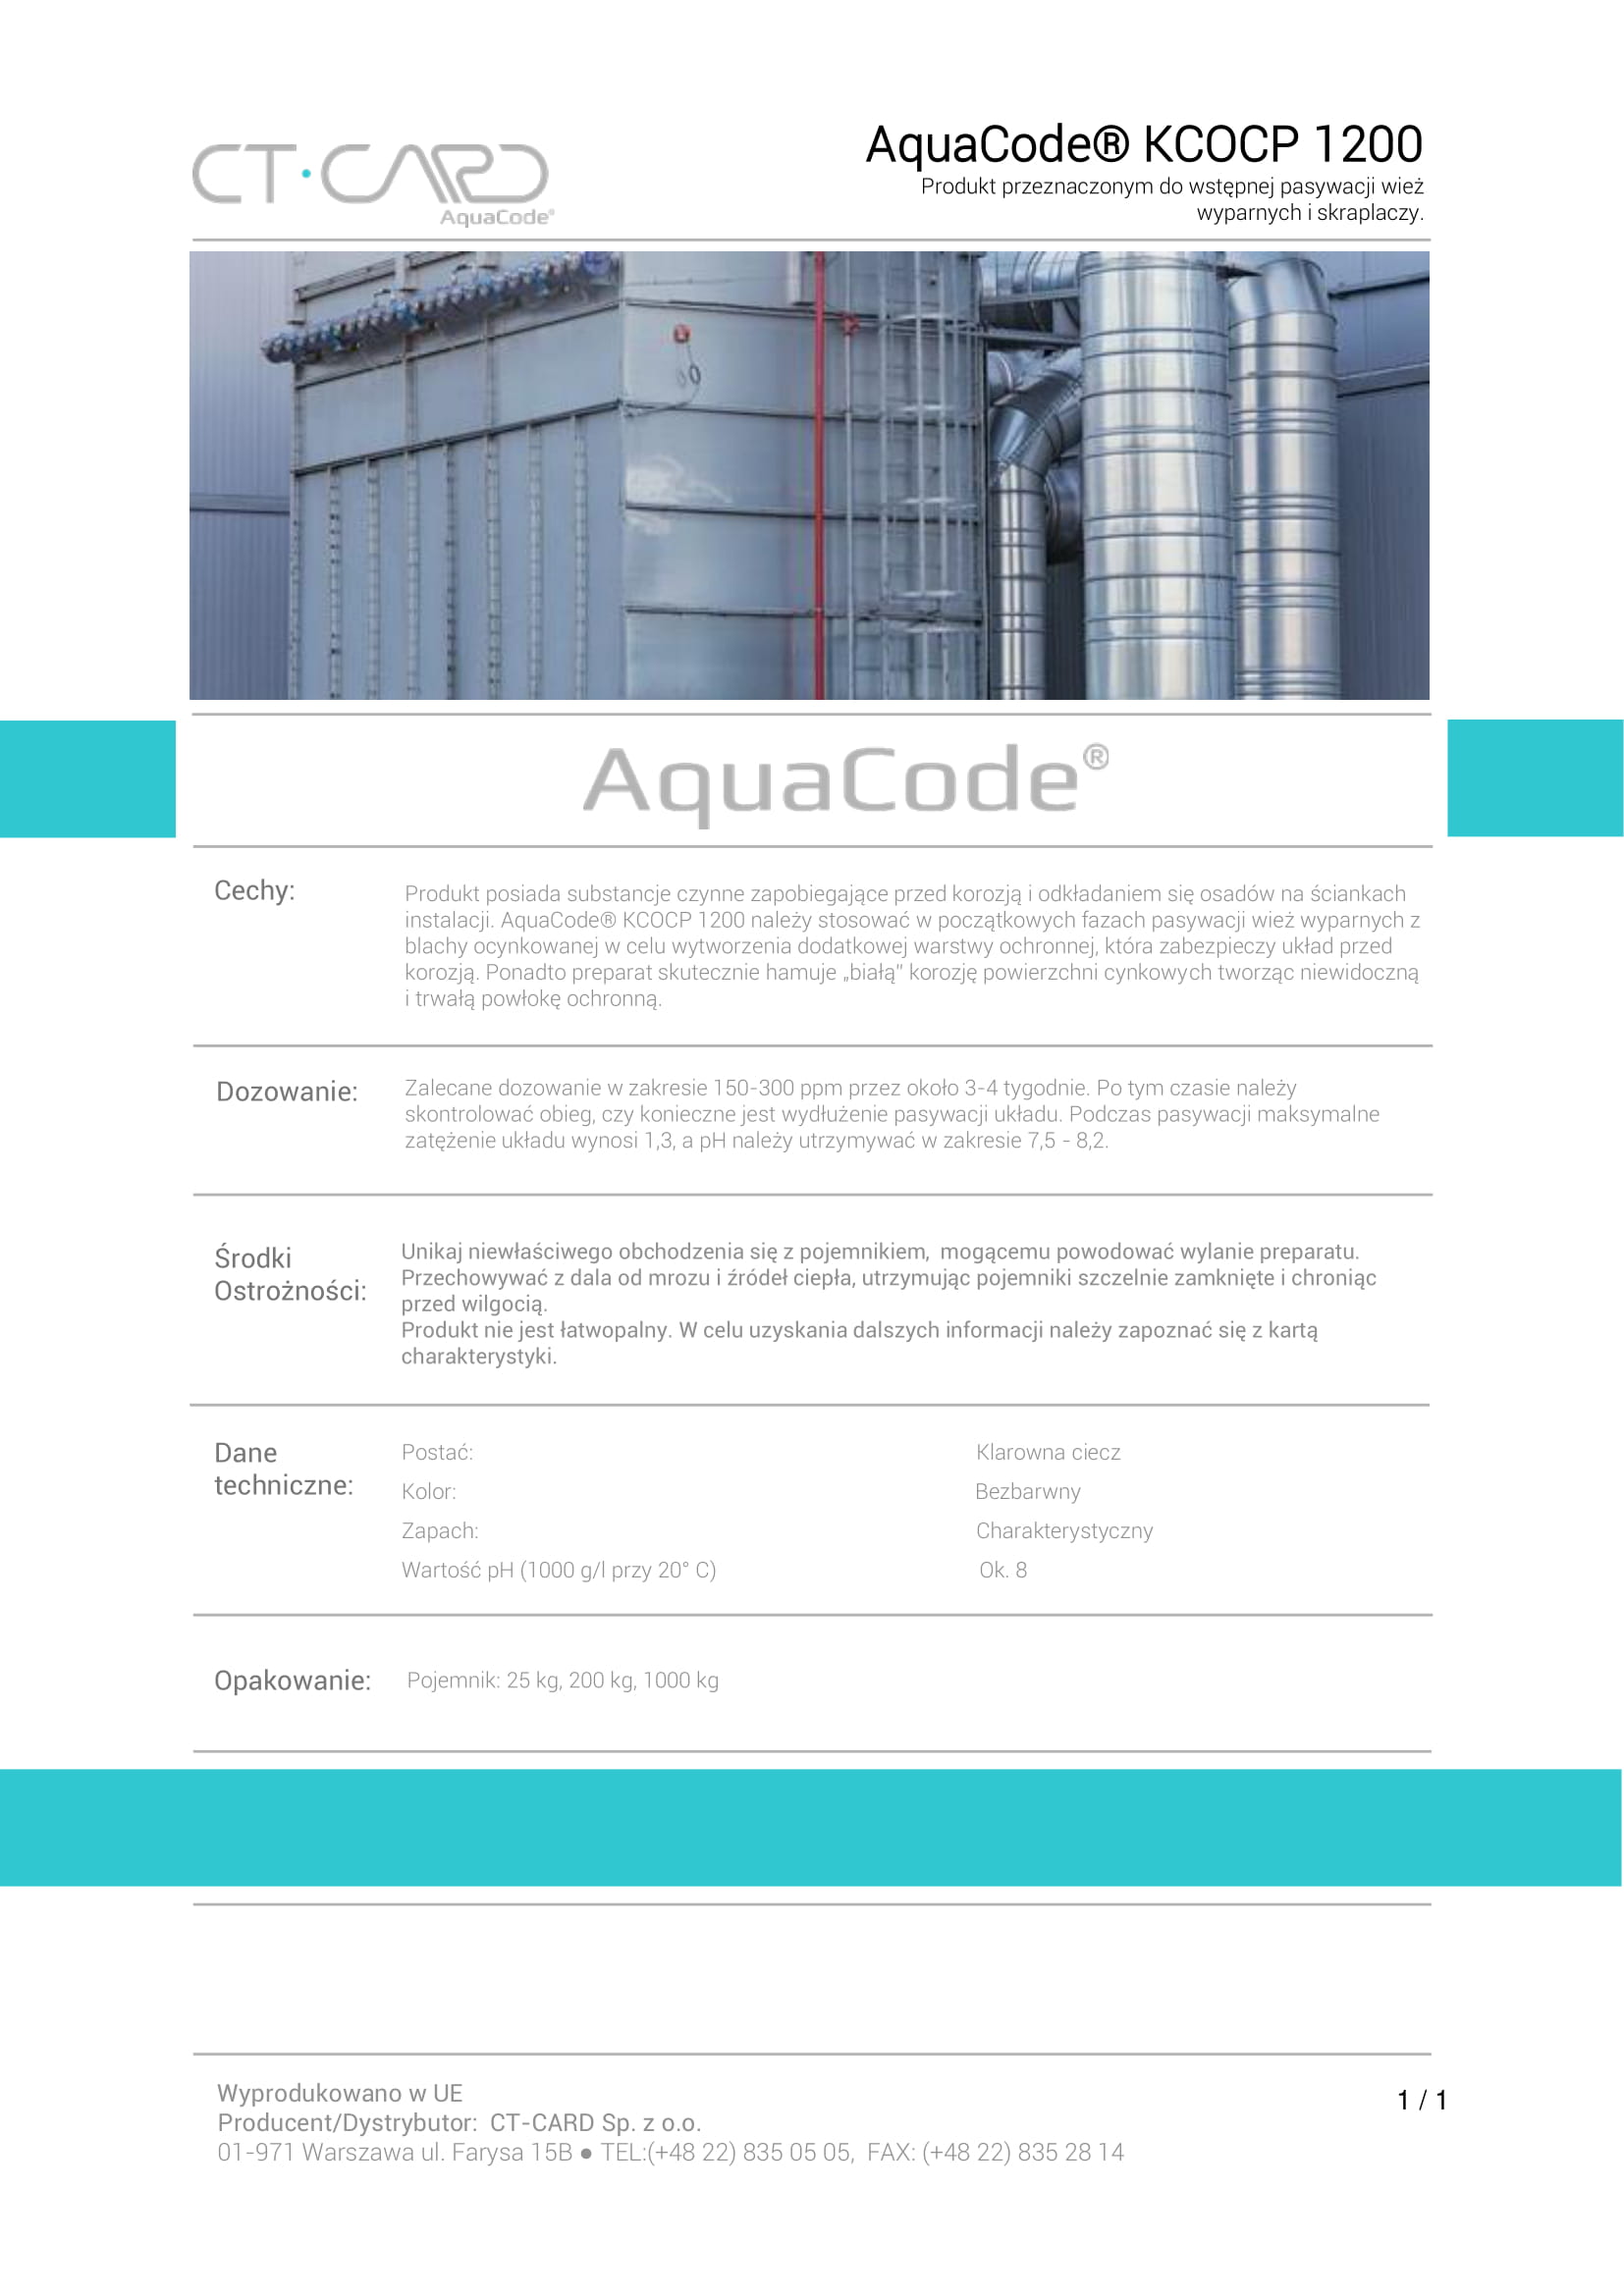 AquaCode_KCOCP_1200-1